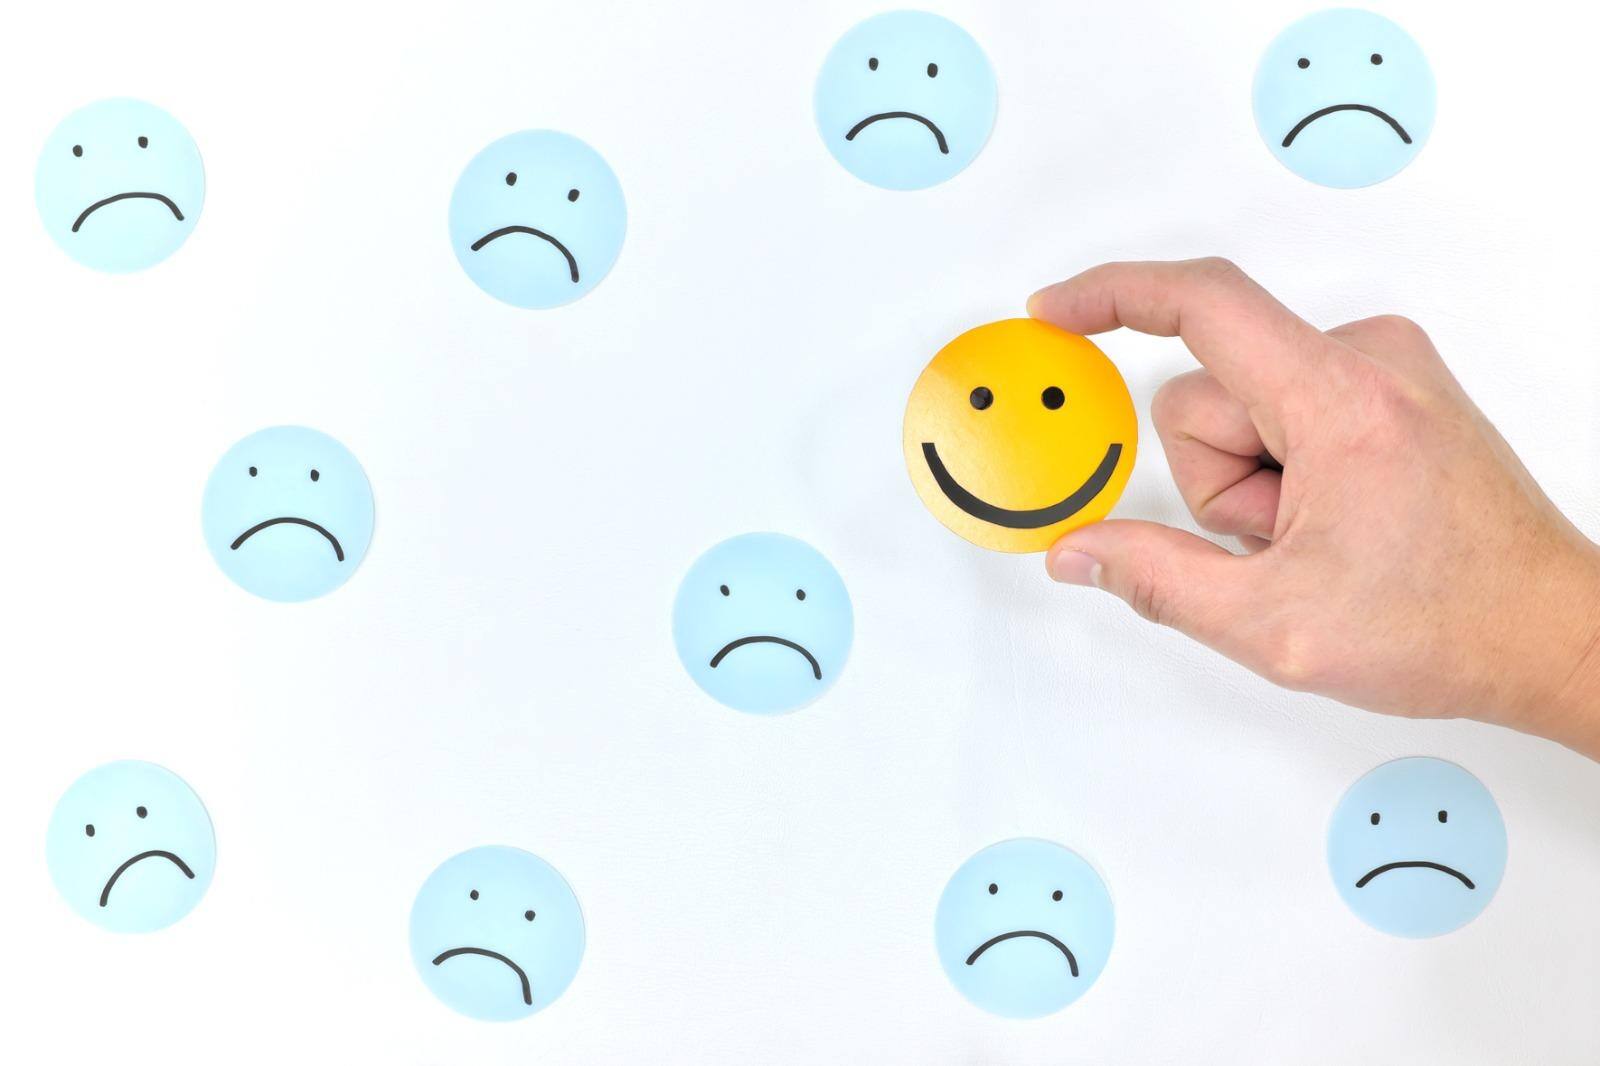 Psicóloga aponta a importância de acolher a tristeza sem julgamentos para se alcançar uma felicidade verdadeira